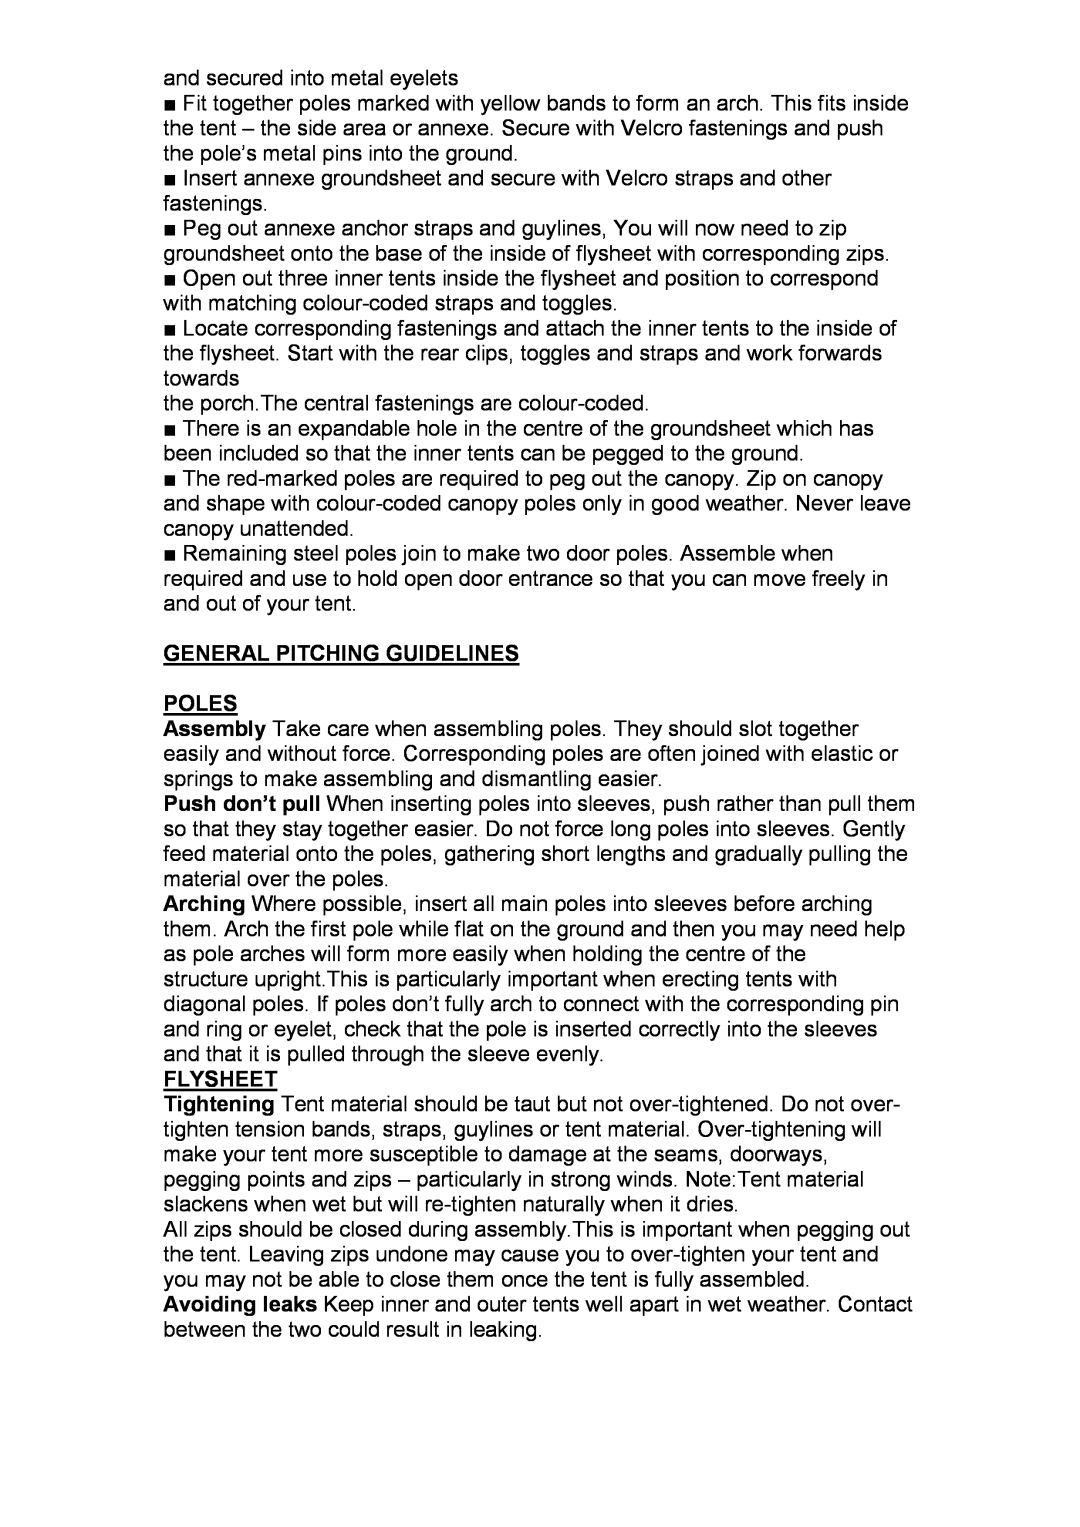 Royal Leisure 6 XL ZG manual General Pitching Guidelines Poles, Flysheet 